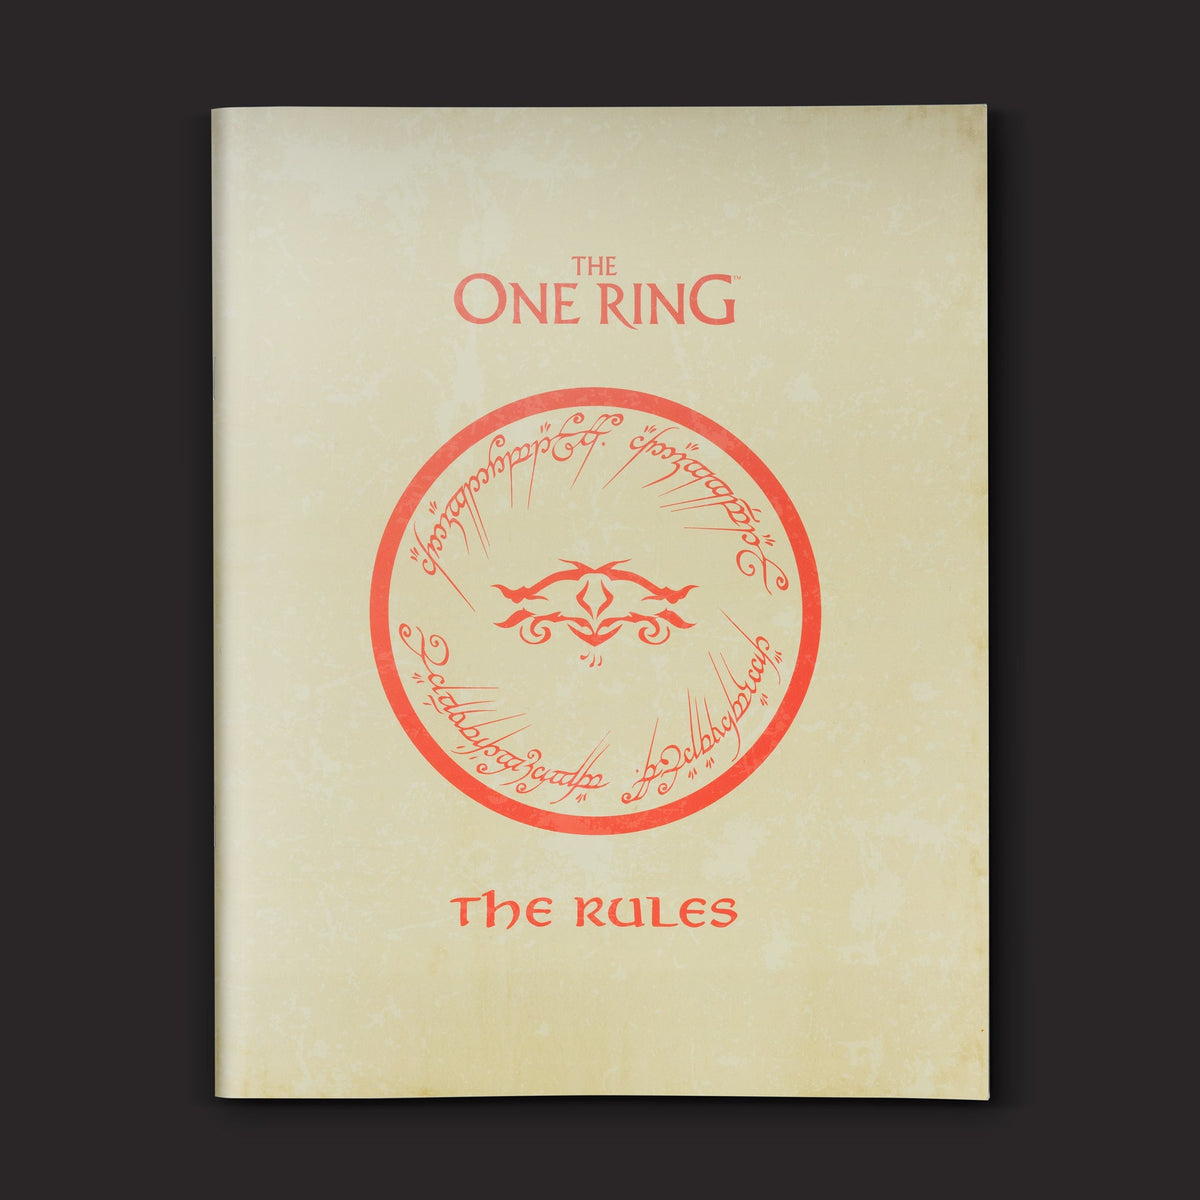 The One Ring RPG - Starter Set